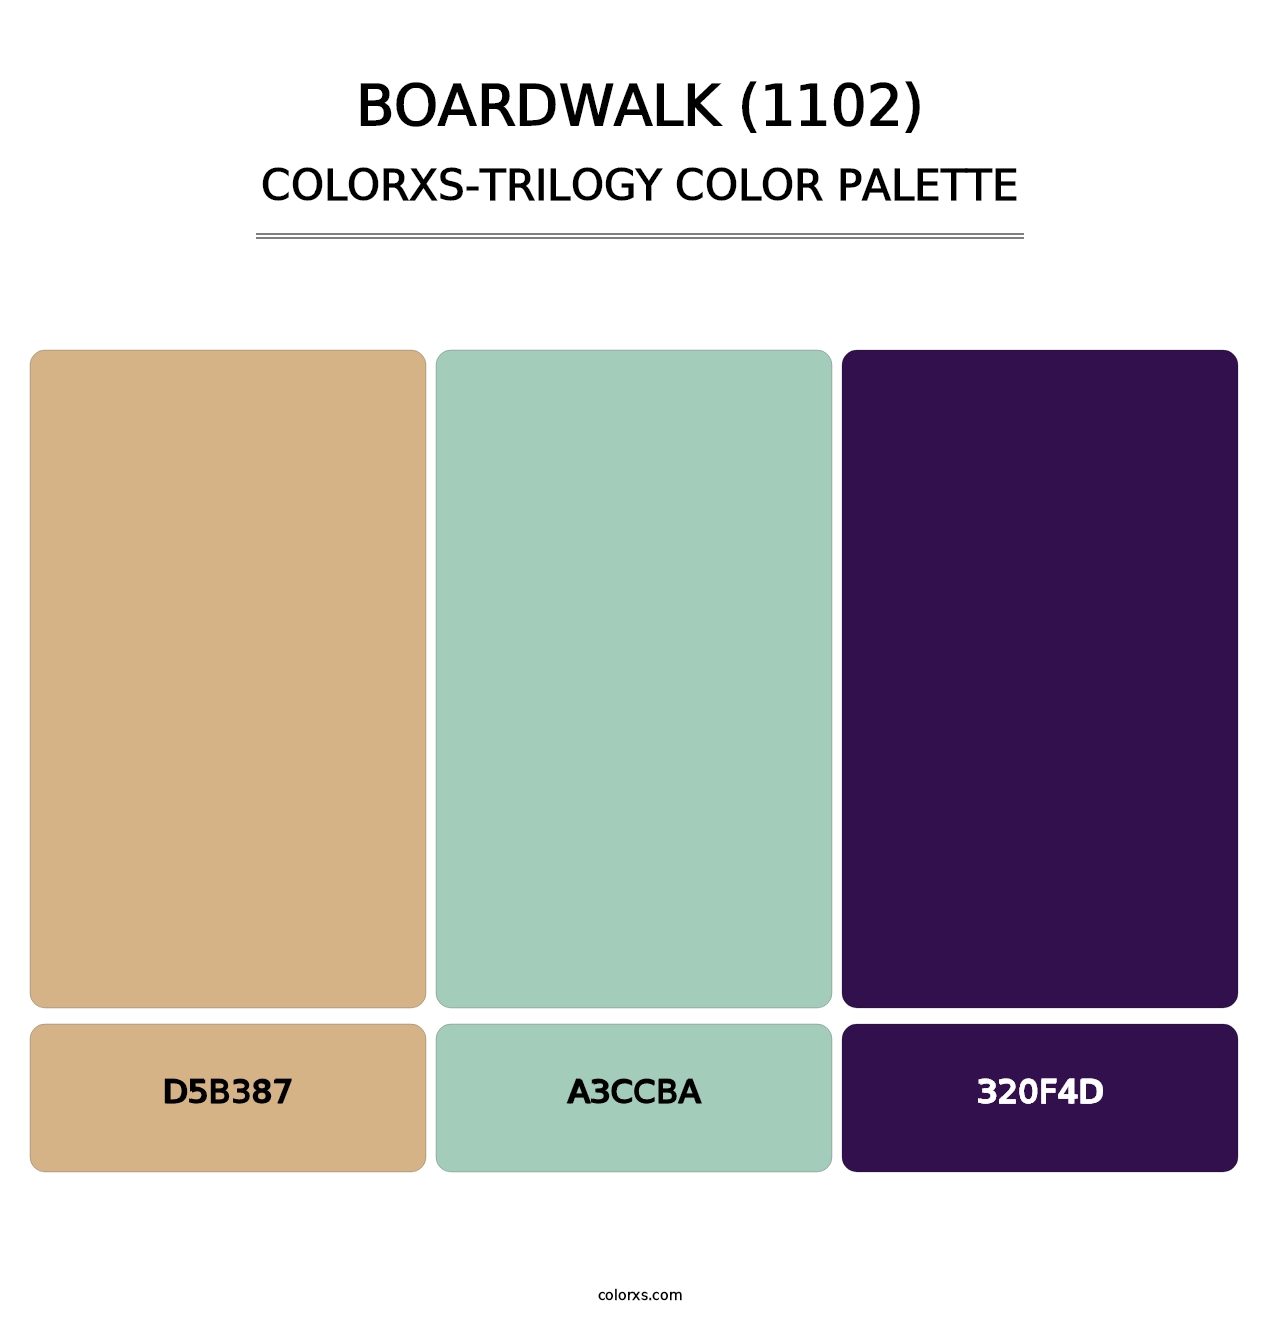 Boardwalk (1102) - Colorxs Trilogy Palette